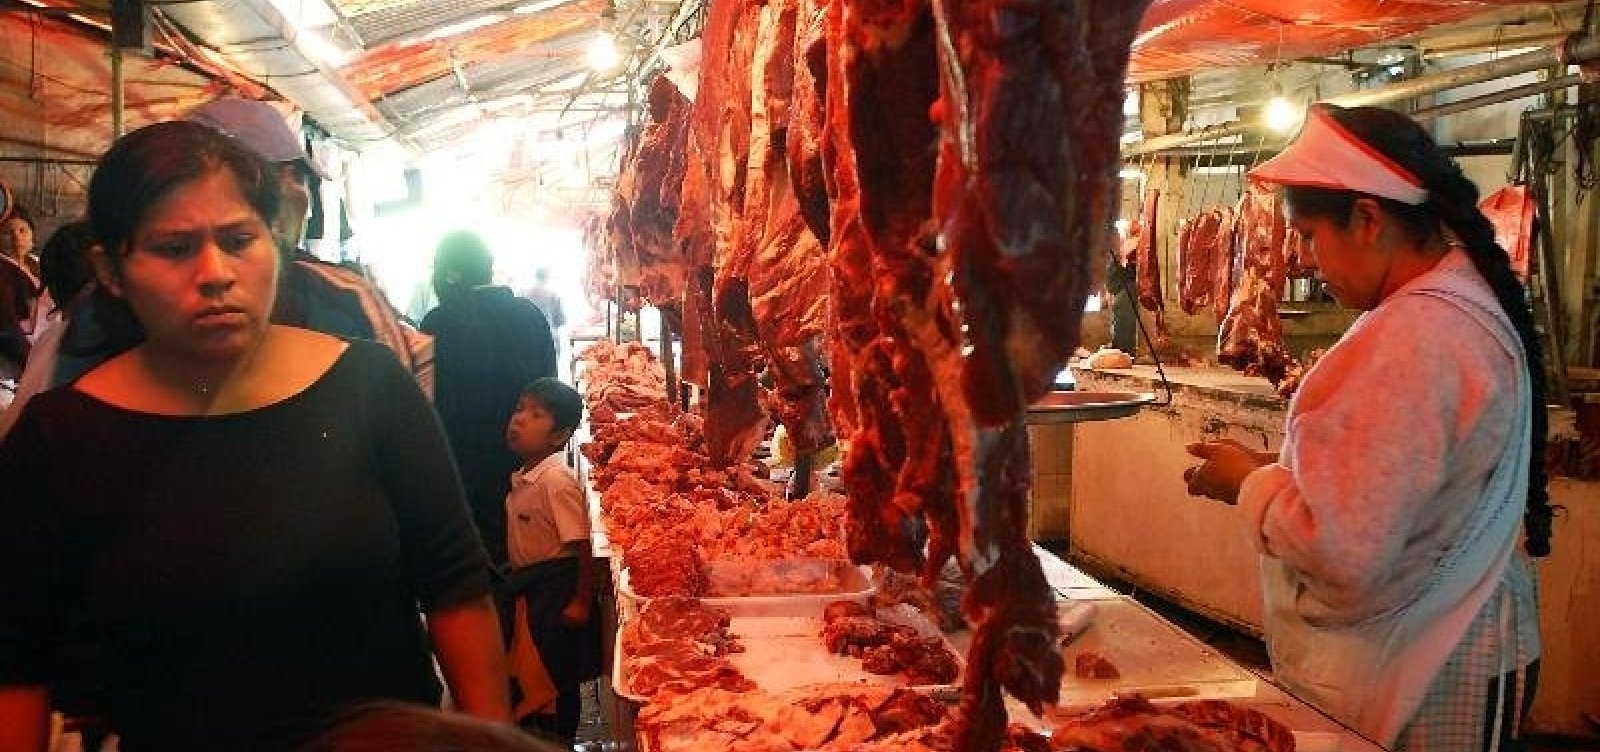 Ministério da Agricultura diz que preço da carne caiu para consumidor no fim do ano